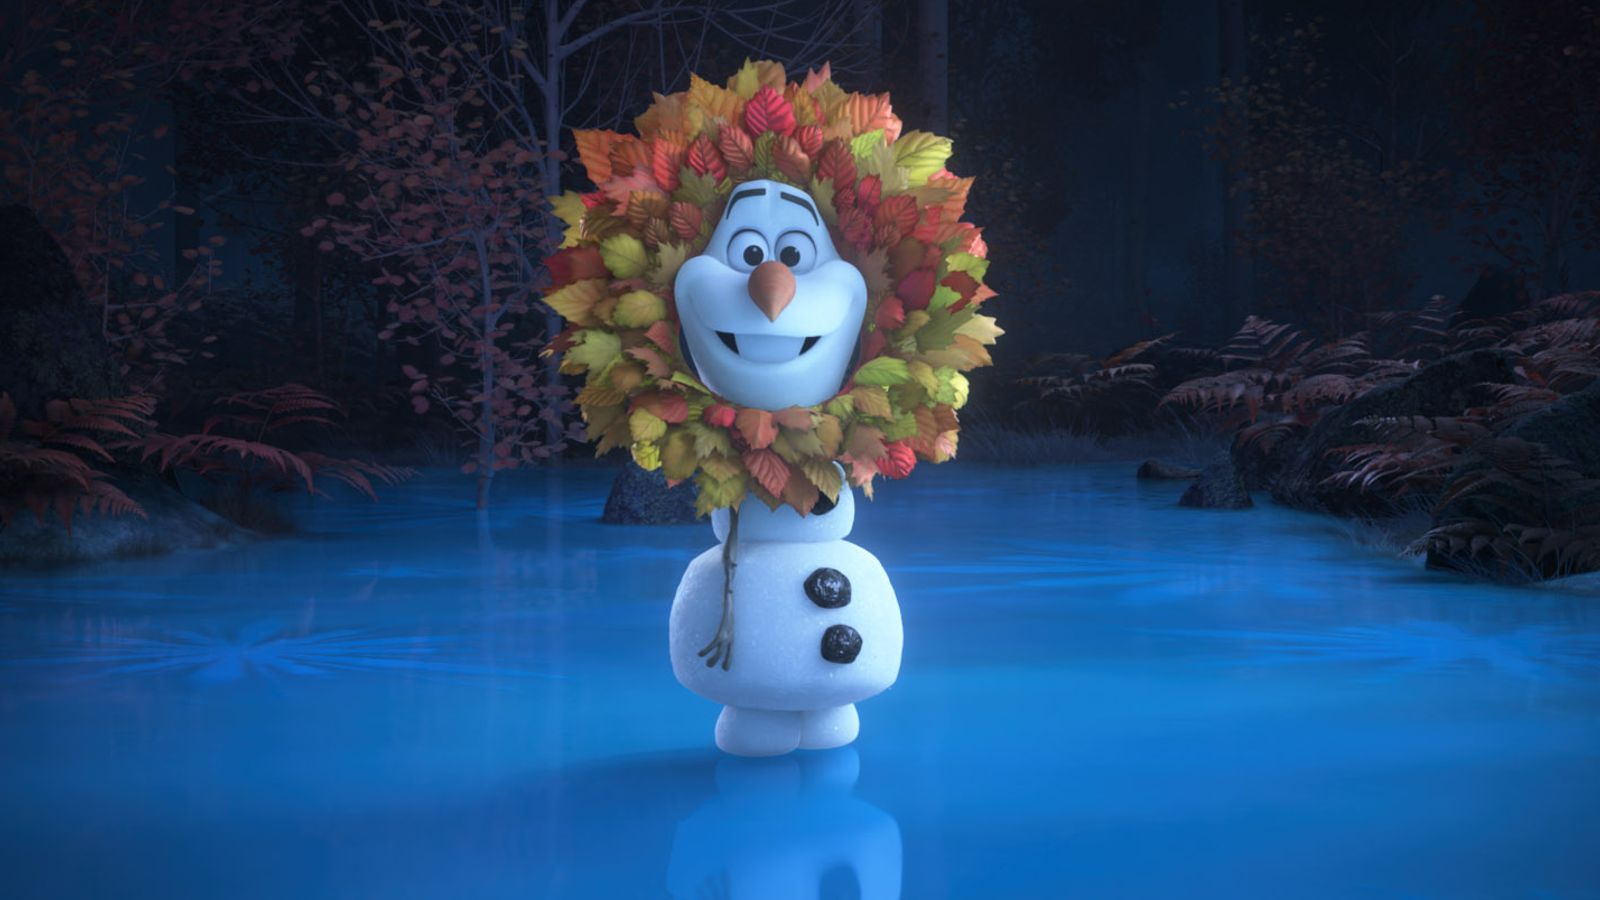 Animator Disney merenungkan popularitas Frozen’s Olaf saat ia mendapatkan seri baru celana pendek |  Berita Ent & Seni